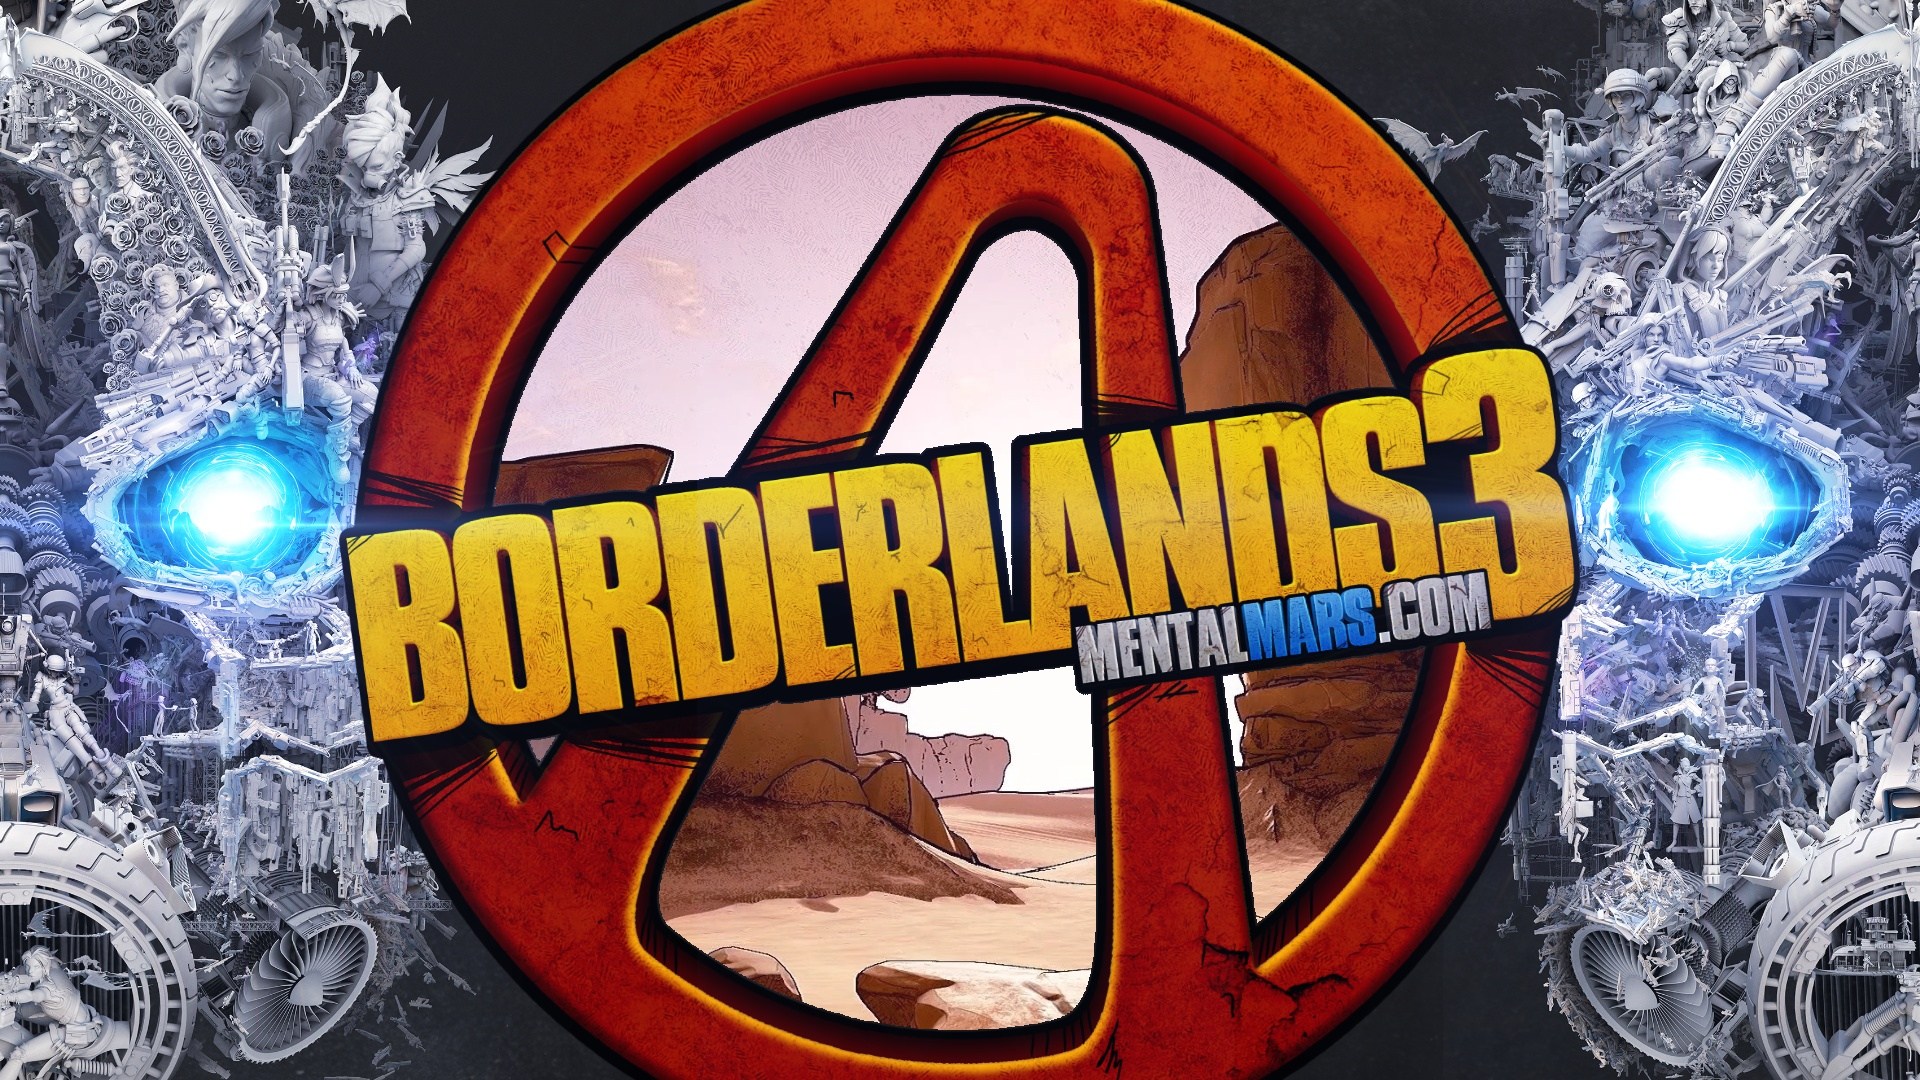 Mask Of Mayhem Borderlands 3 , HD Wallpaper & Backgrounds